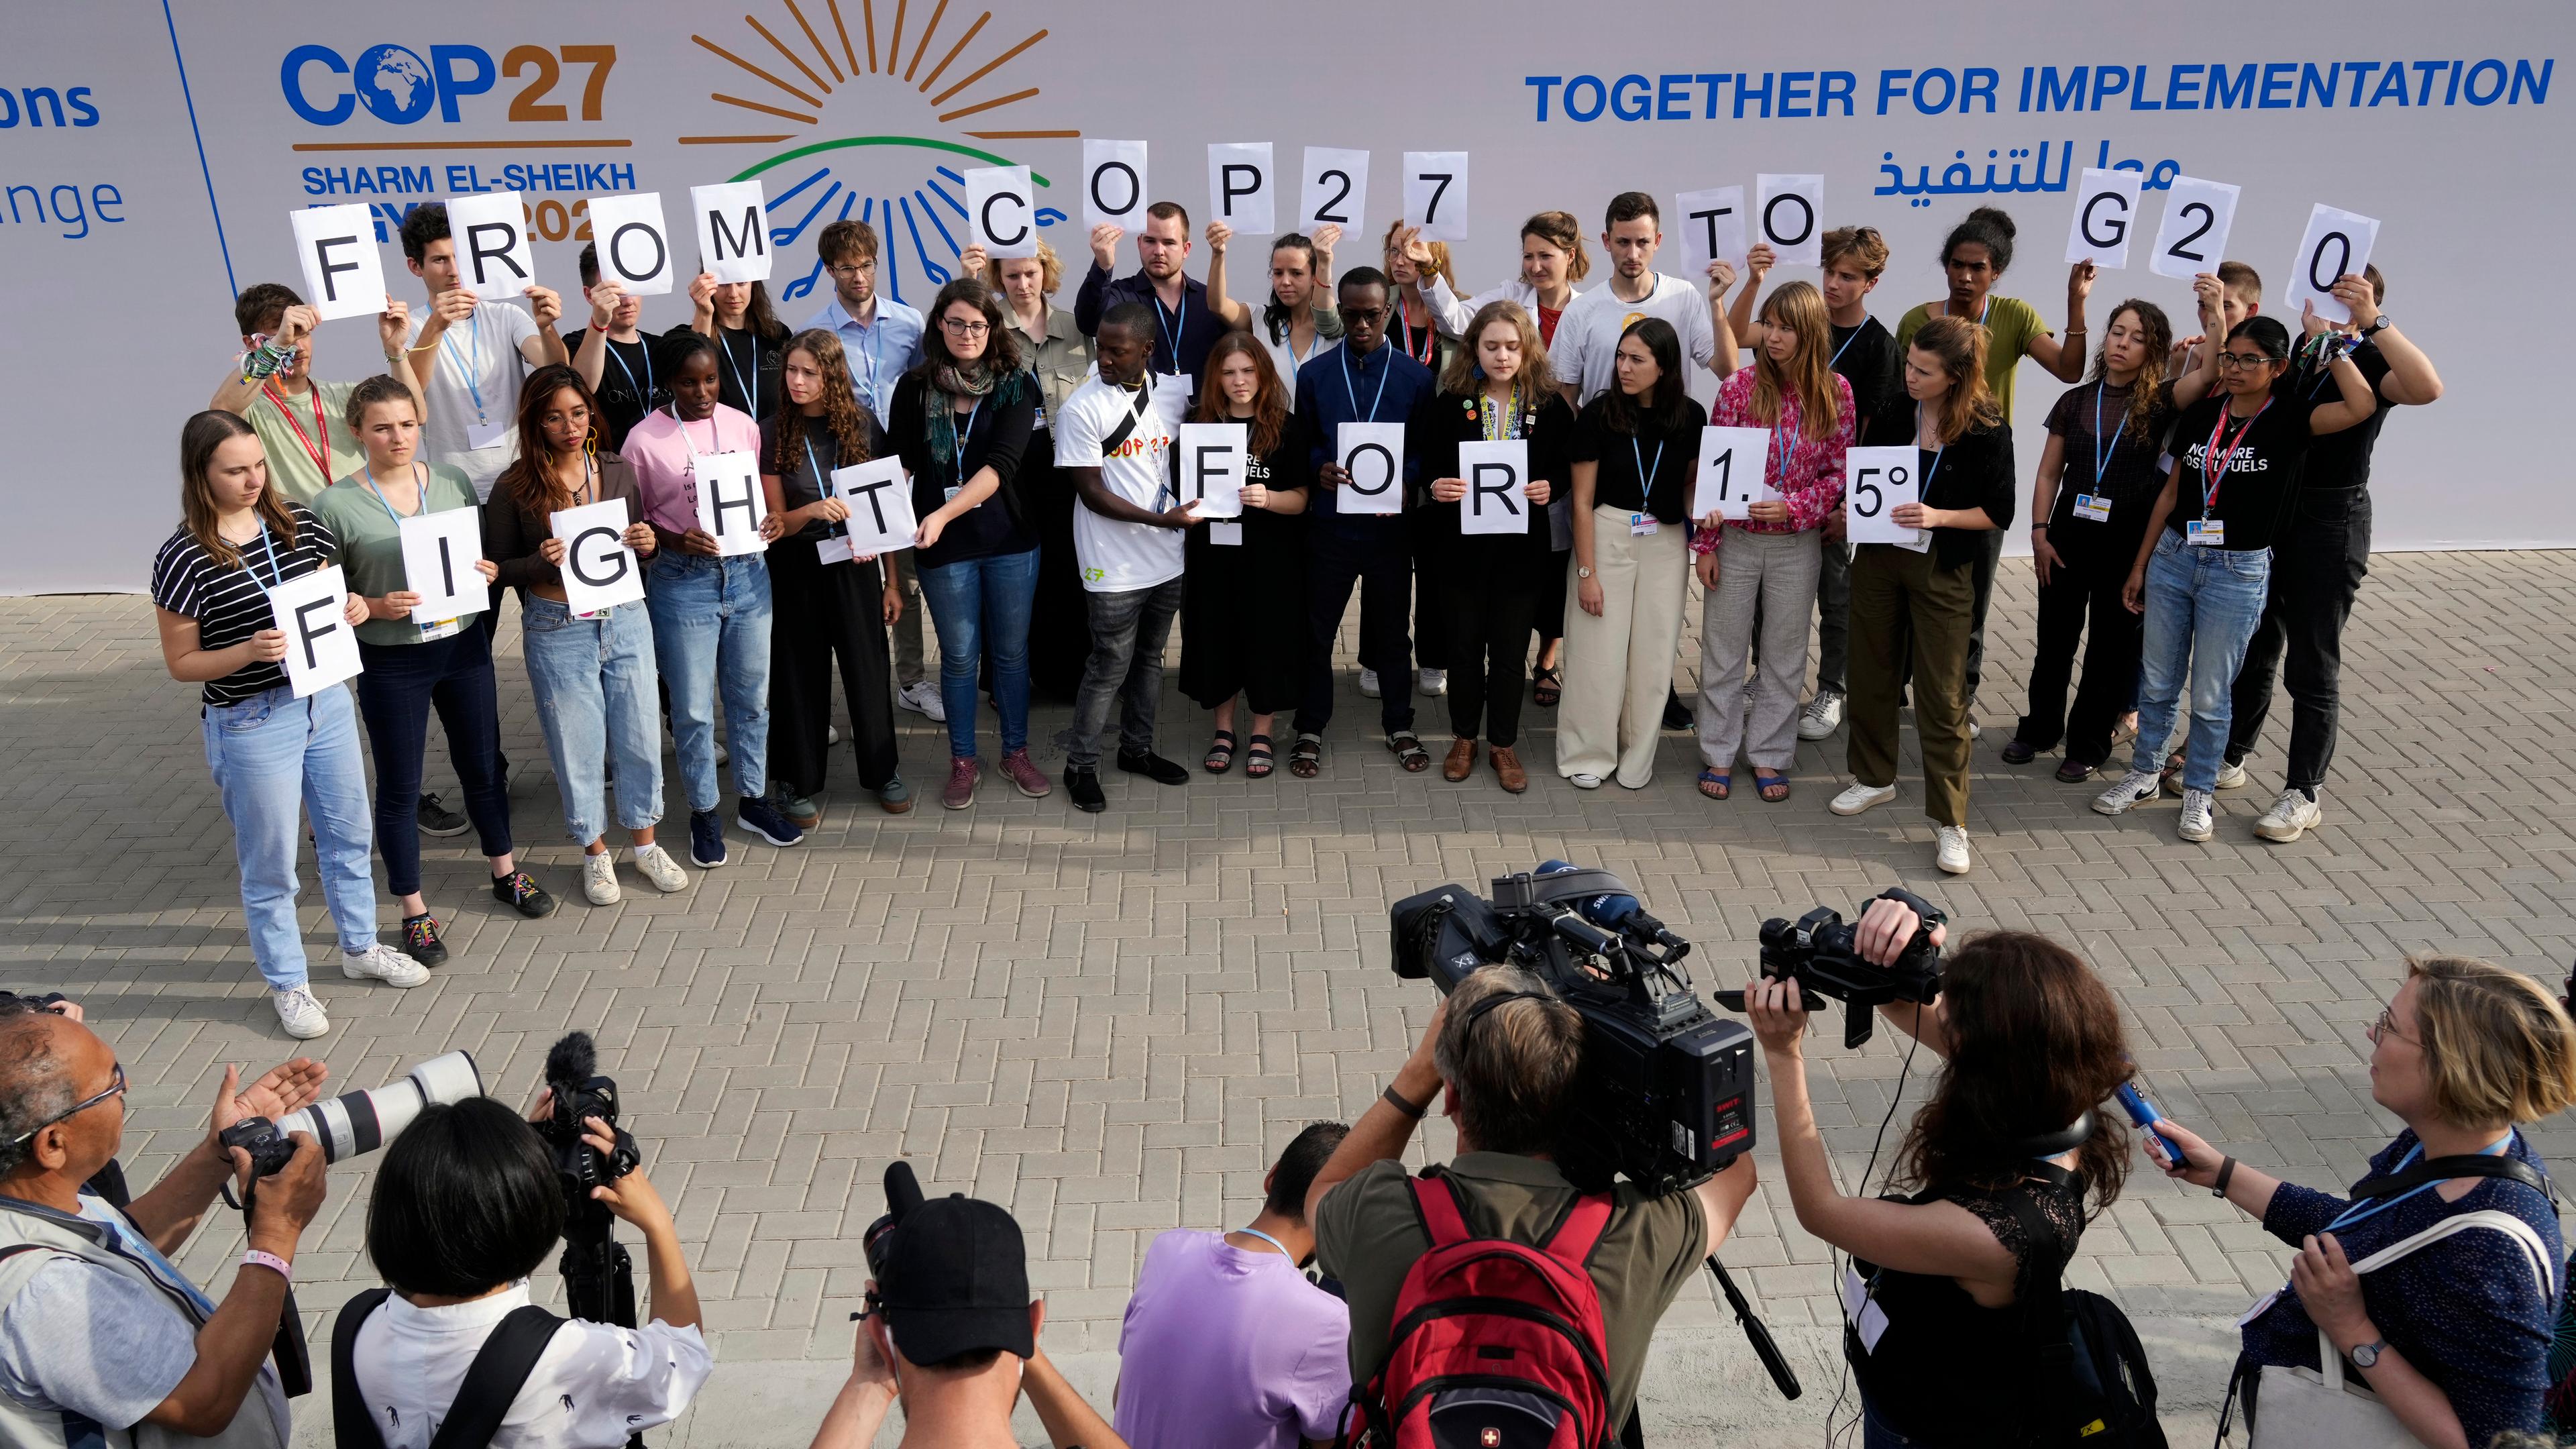 Ägypten, Scharm El Scheich: Junge Klimaaktivisten halten Schilder mit der Aufschrift "From COP27 To G20 Fight For 1.5" beim UN-Klimagipfel COP27.